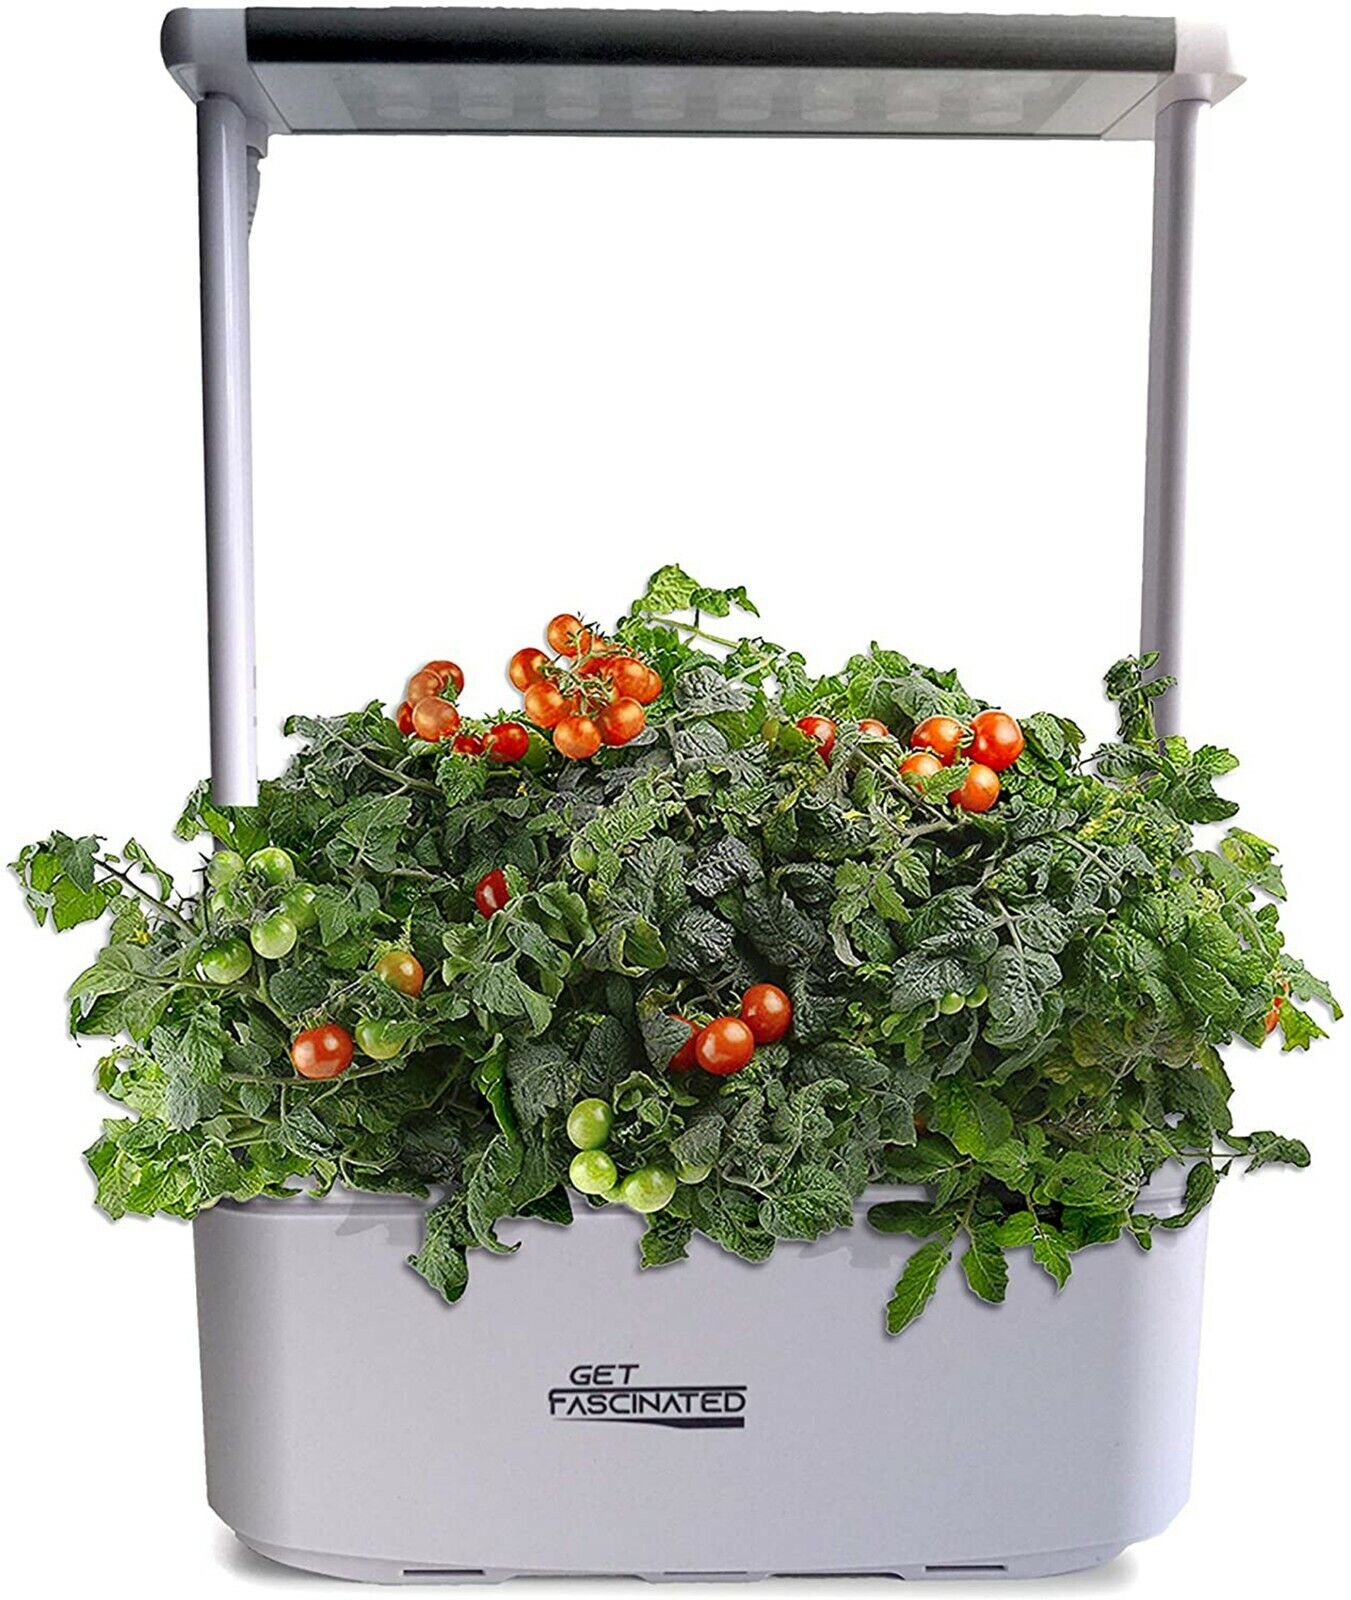 Get Fascinated Mini Smart Garden Hydroponics Indoor Growing System – Auto Wateri